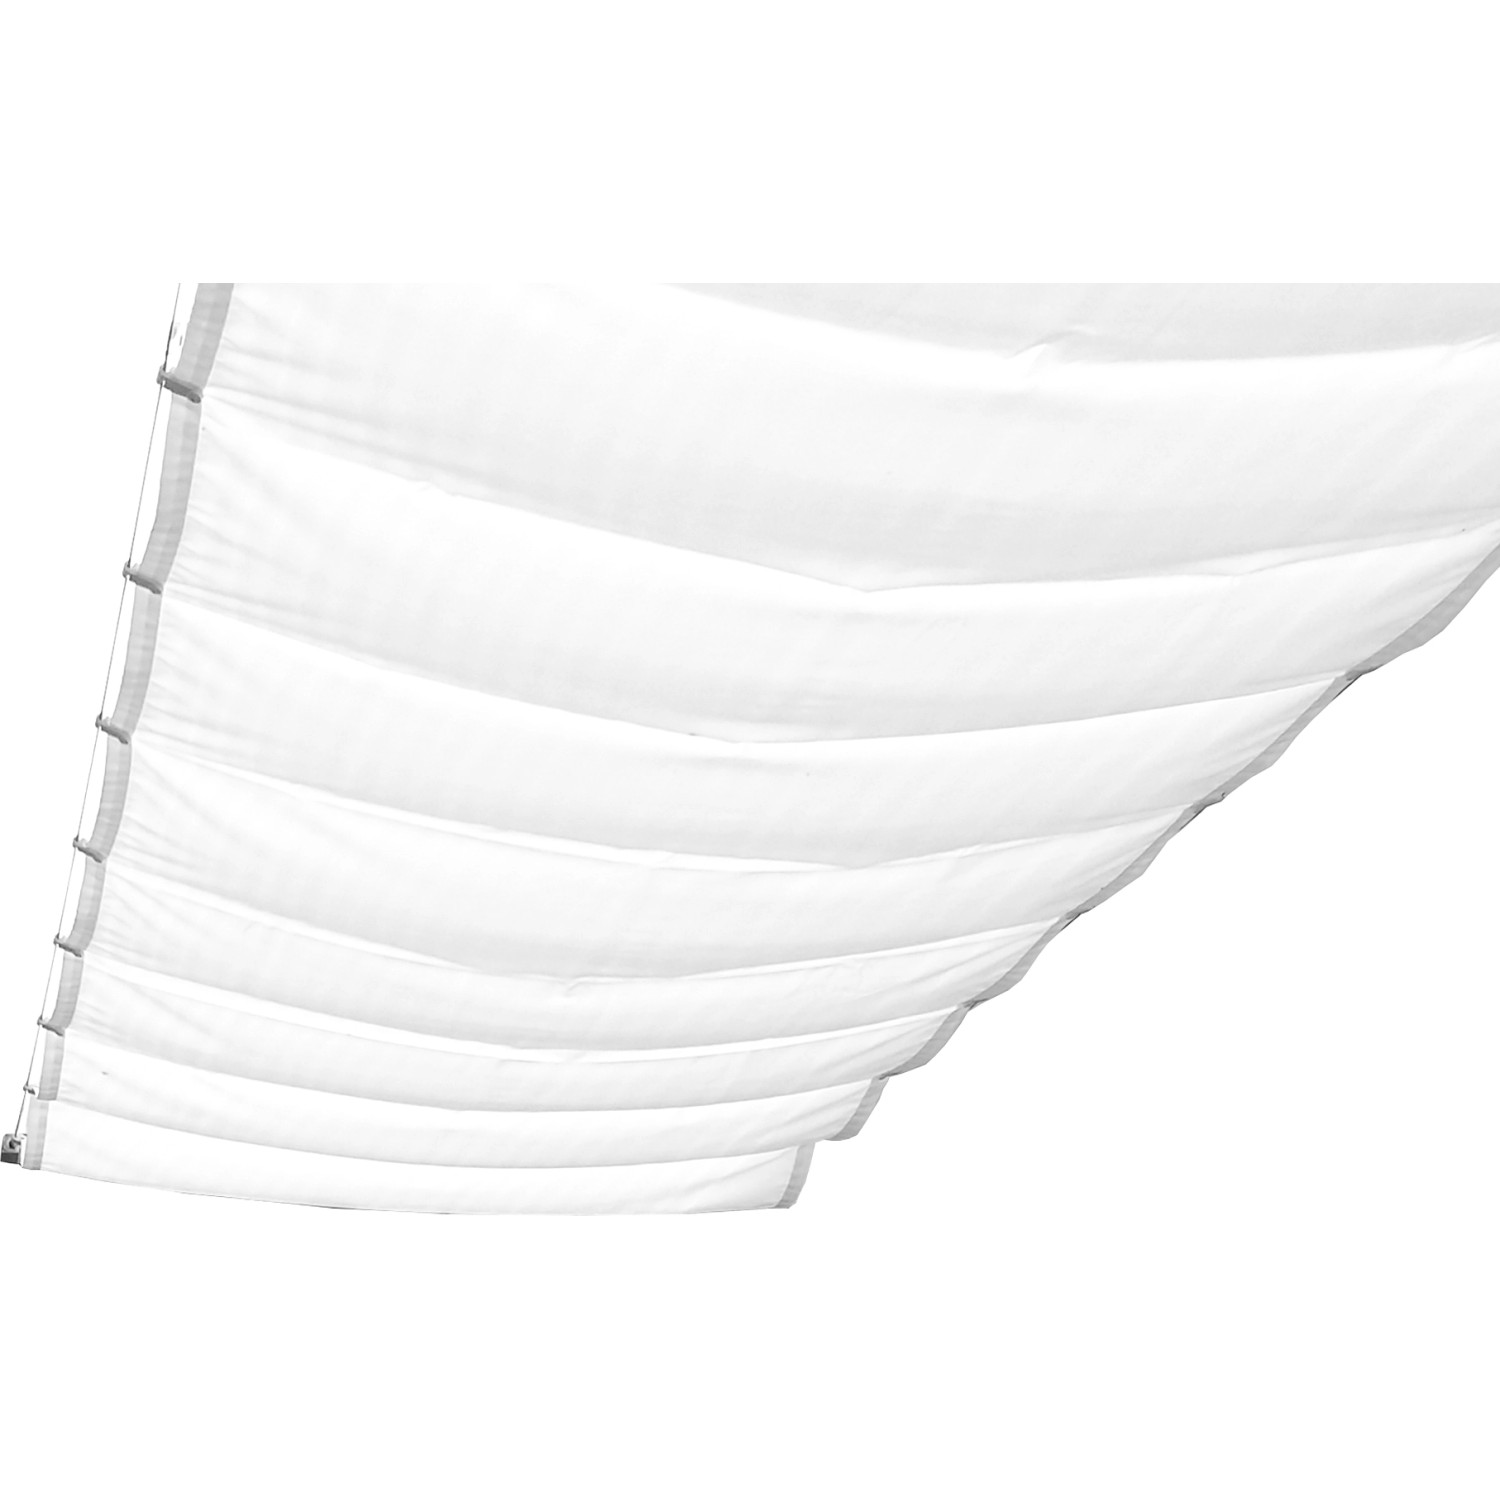 Peddy Shield Sonnensegel 275 cm x 61 cm Uni Weiß von Peddy Shield